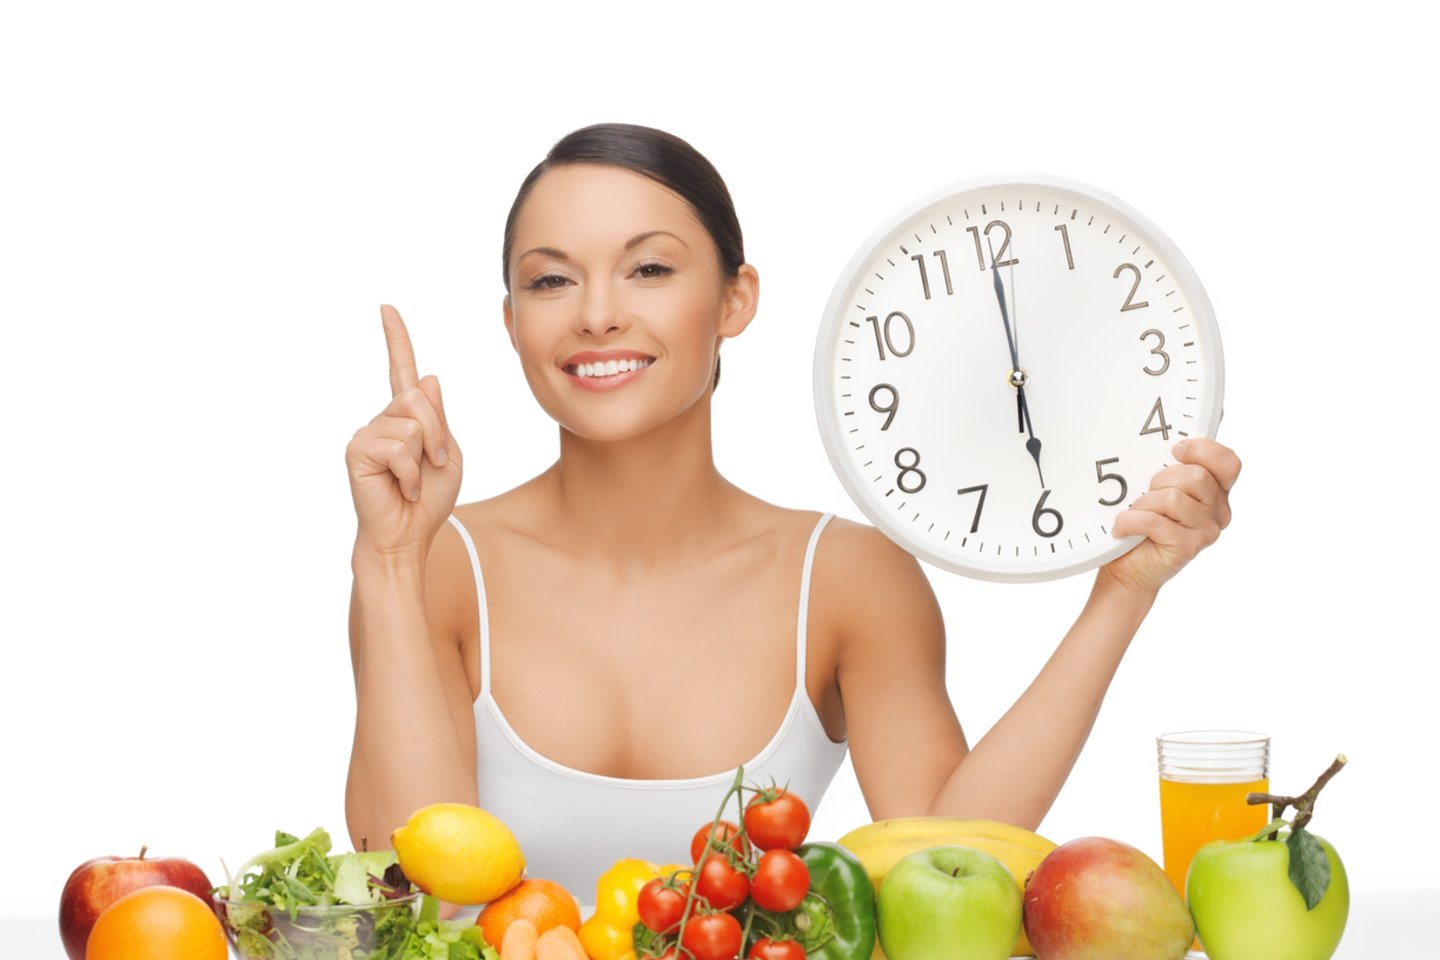 Galite pamėginti 14:10 mitybos būdą: nieko nevalgykite 14 valandų per dieną, o per likusias 10 valandų suvartokite įprastą kalorijų kiekį.<br>123rf nuotr.